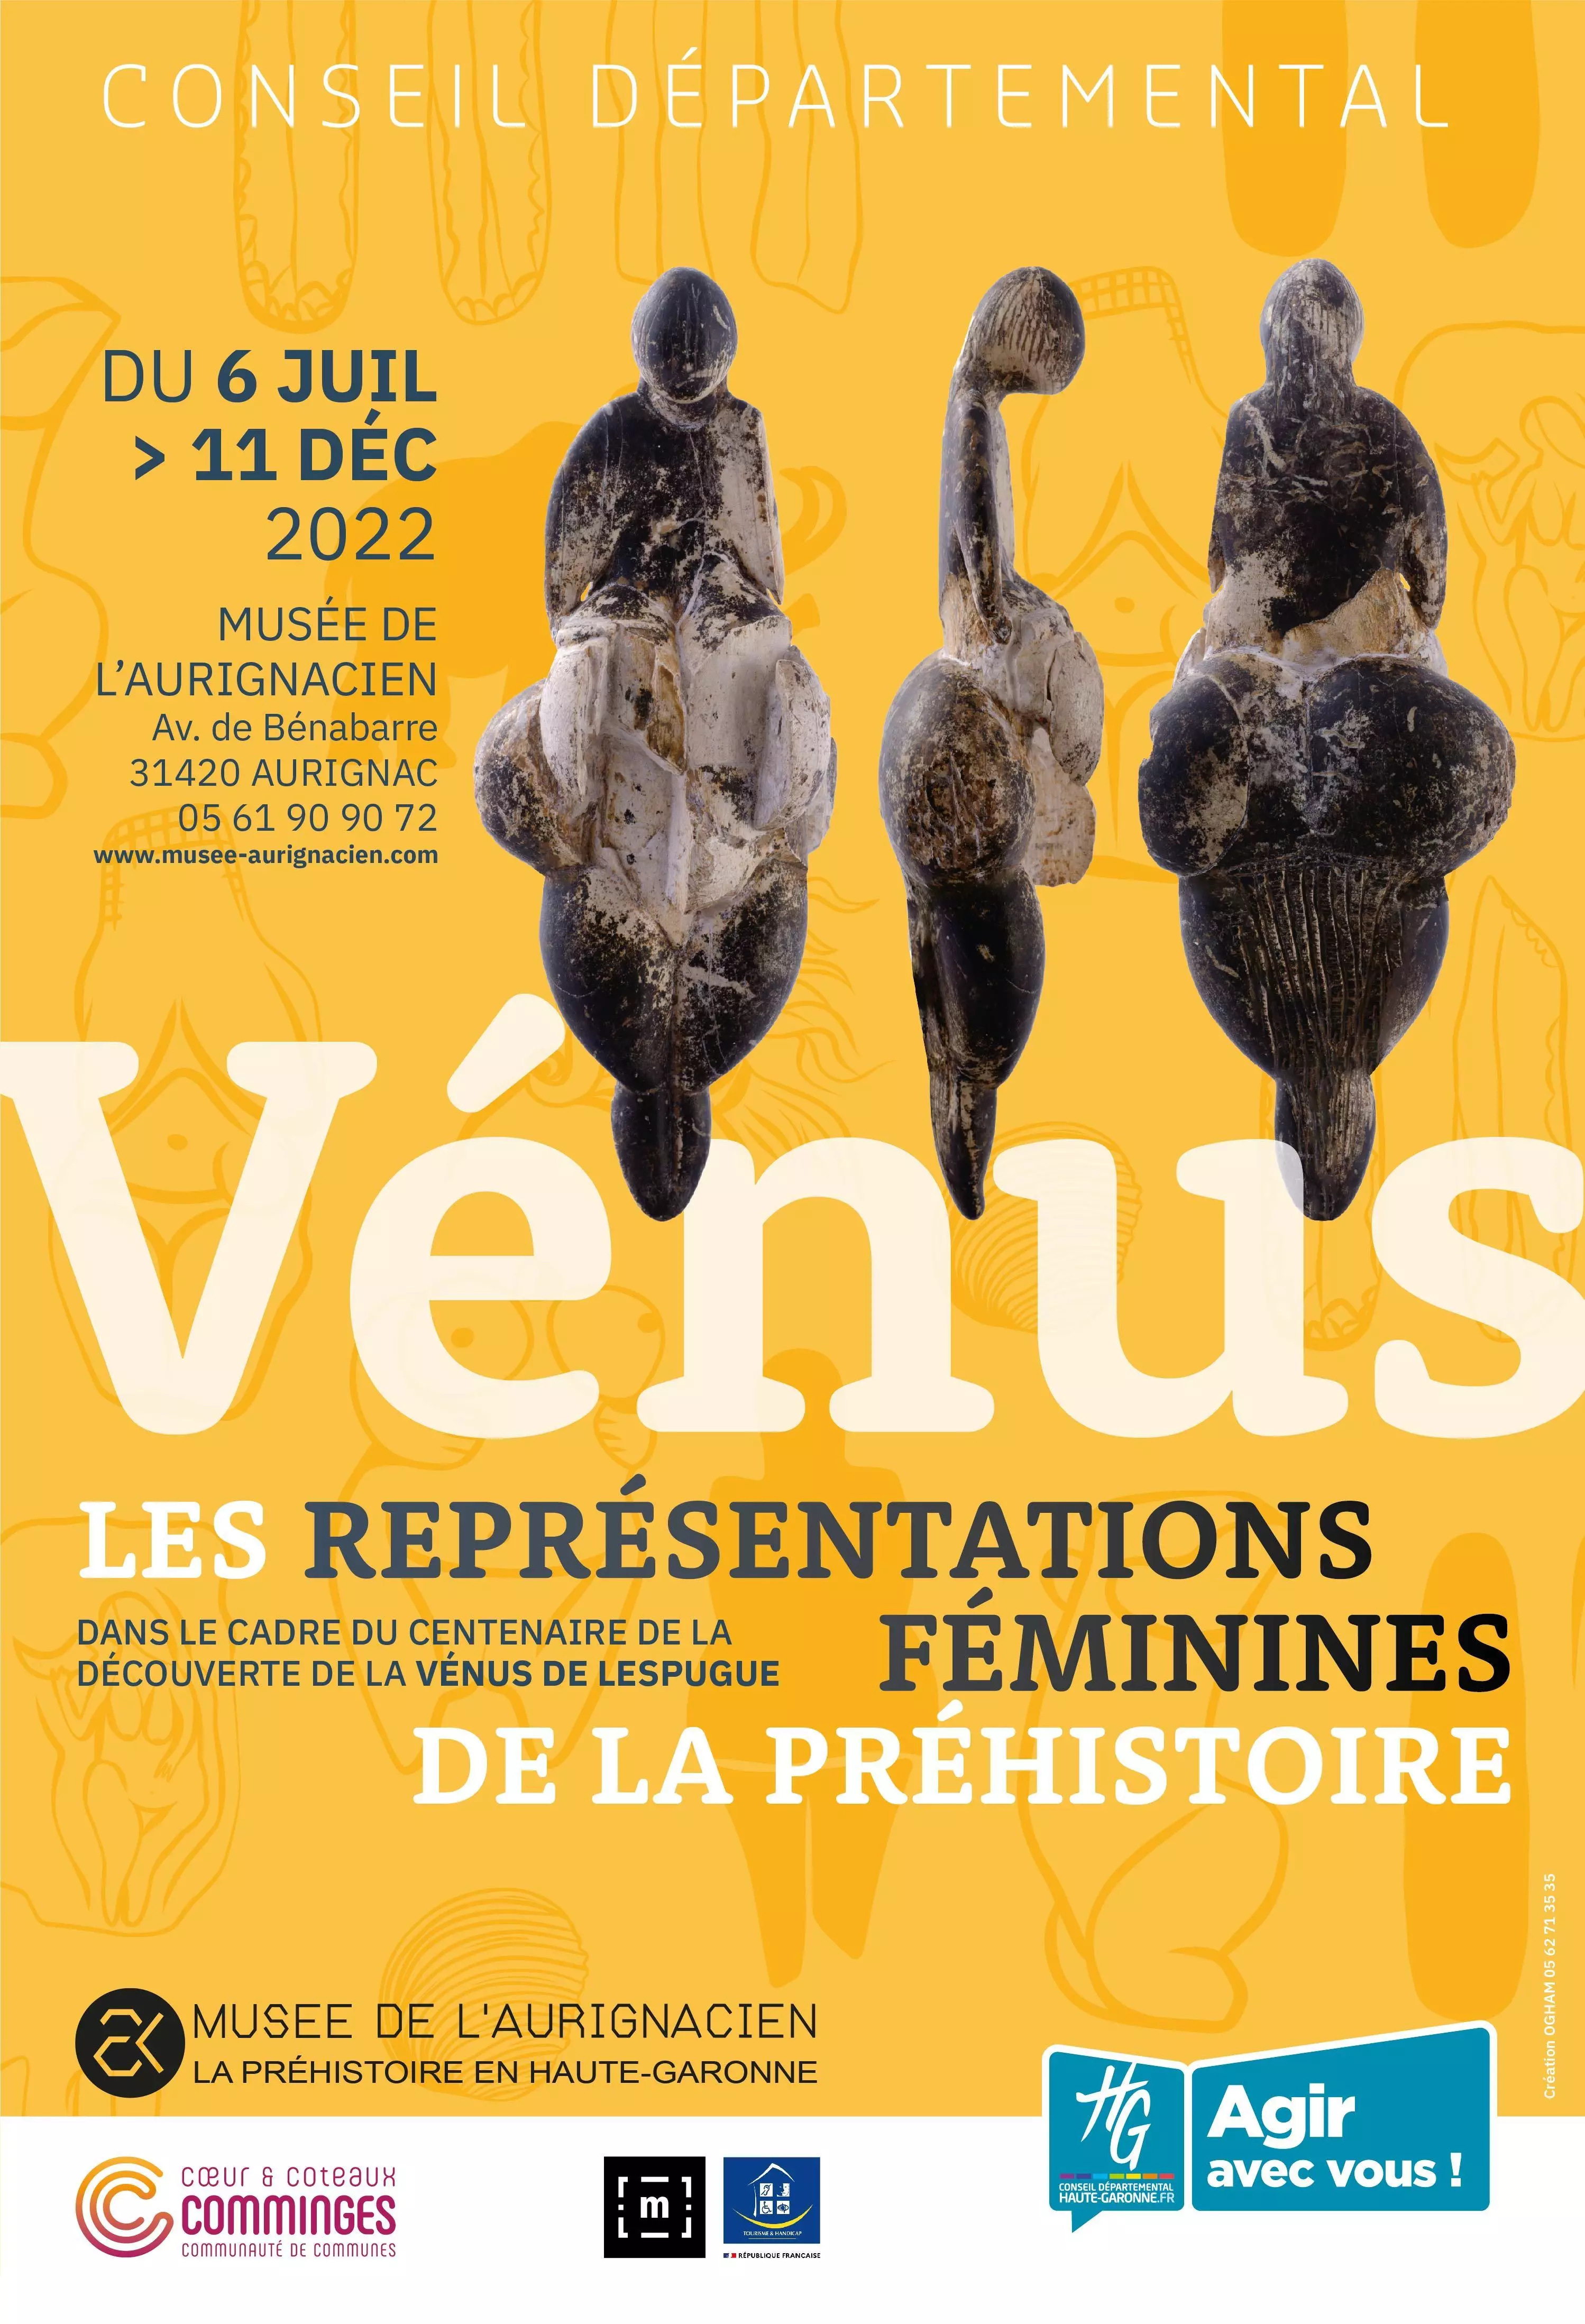 Expositions Cultures Arts-Exposition temporaire : "Vénus", Les représentations féminines de la Préhistoire